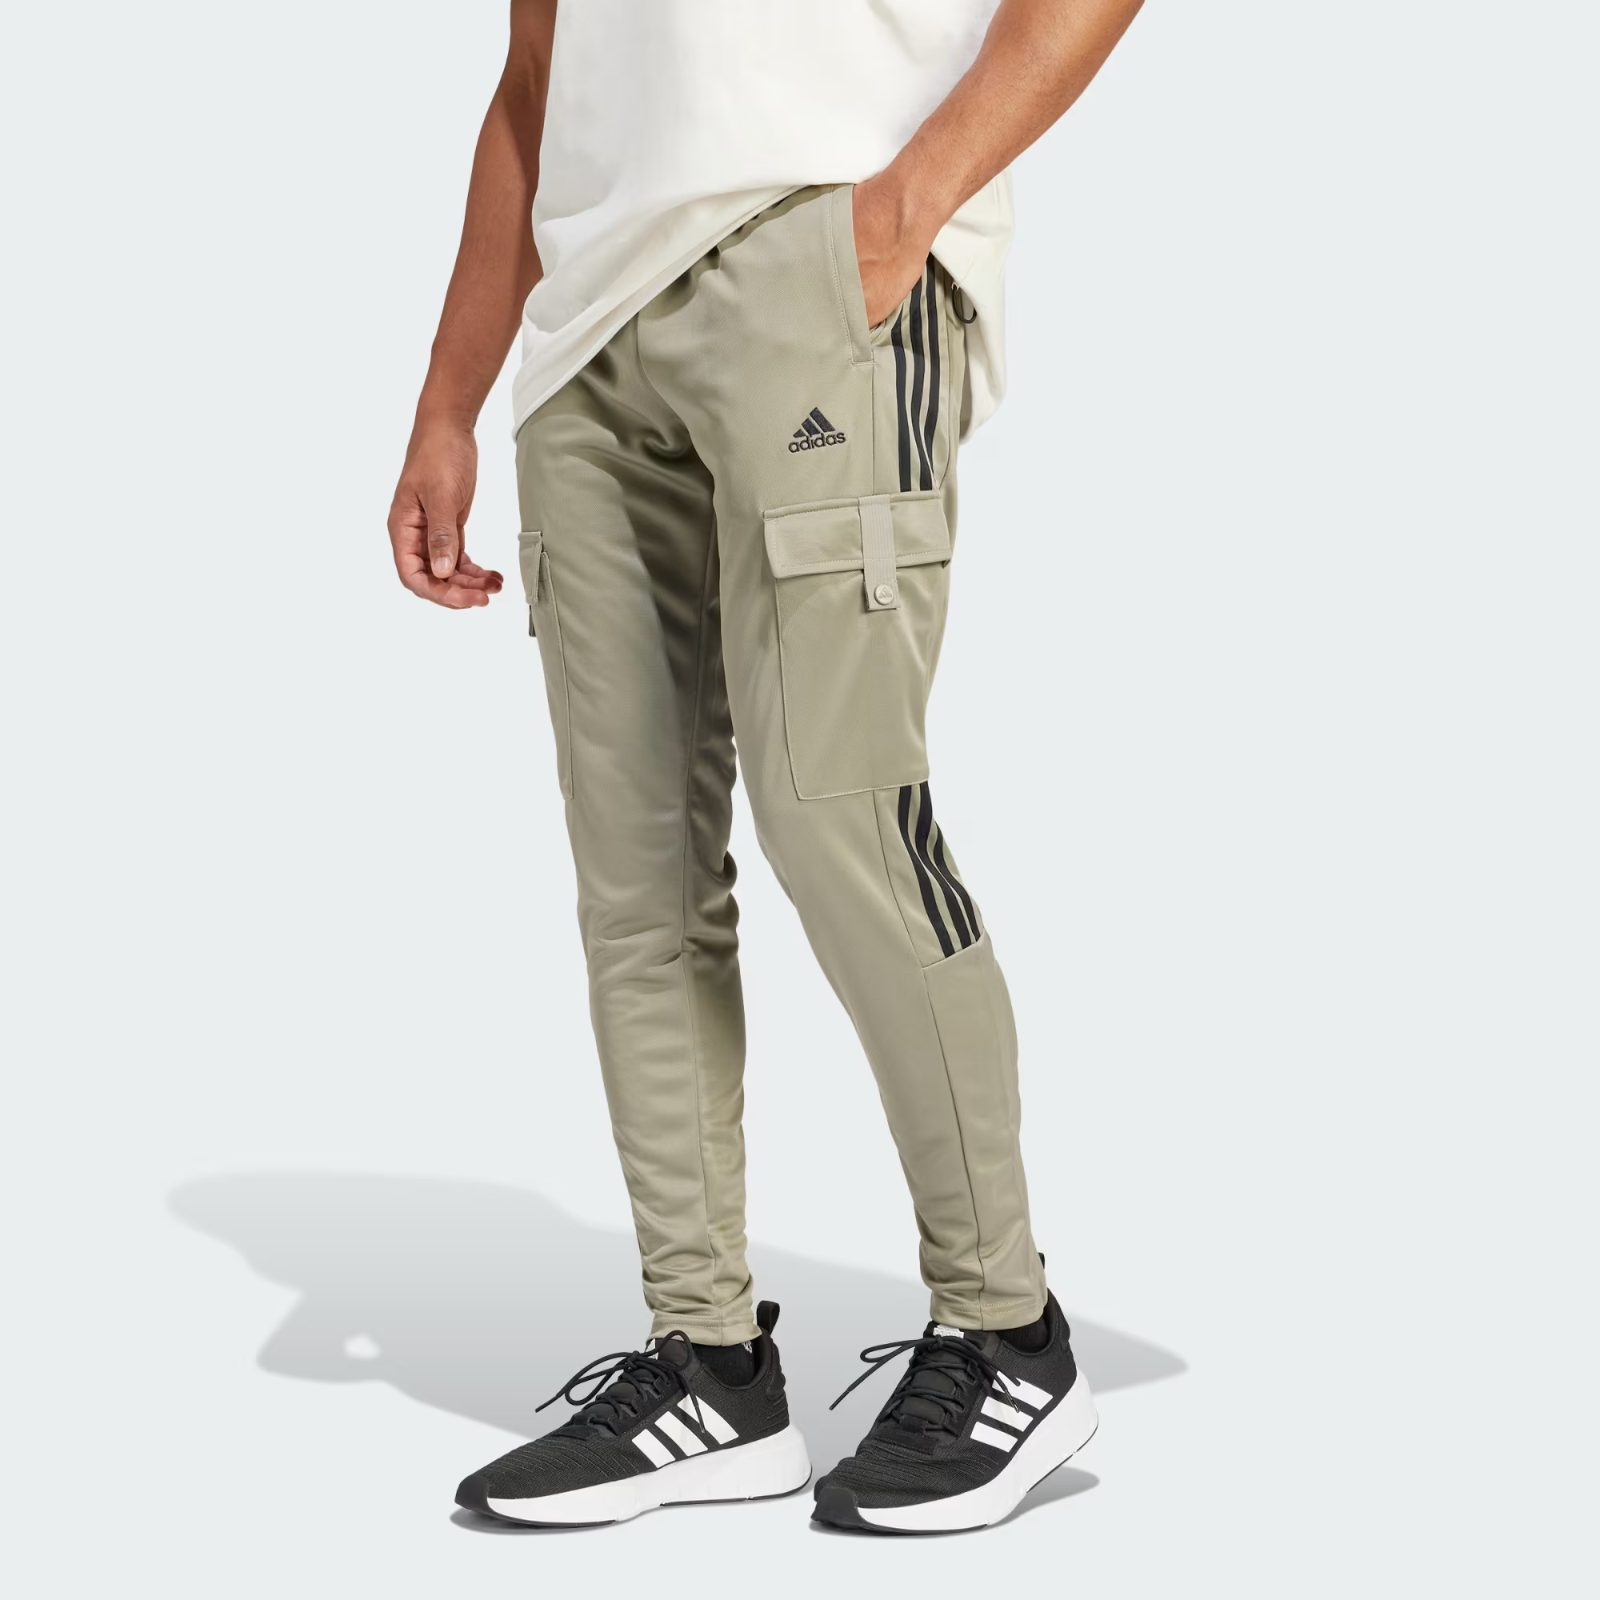 Adidas Uomo Tiro Cargo Comfort Pantaloni and 50 similar items